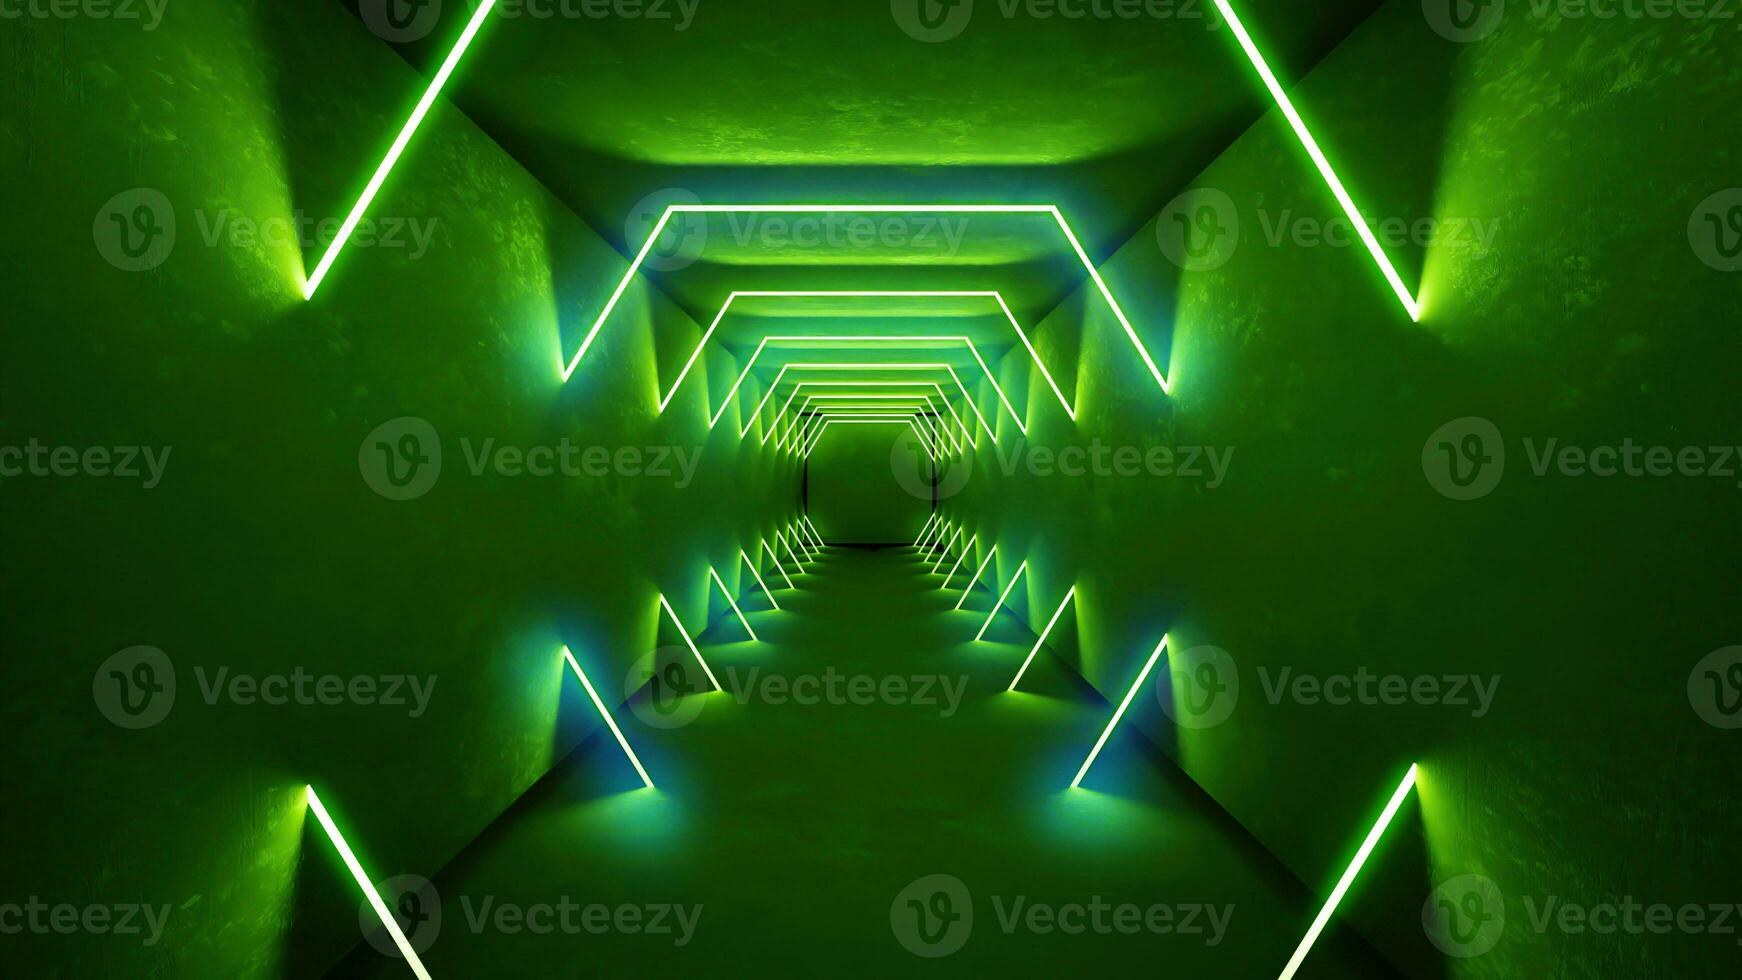 nacht club interieur groen lichten 3d geven voor laser show. gloeiend groen lijnen. abstract fluorescerend groen achtergrond. groen neon kamer gang achtergrond. licht abstract futuristische ontwerp. foto